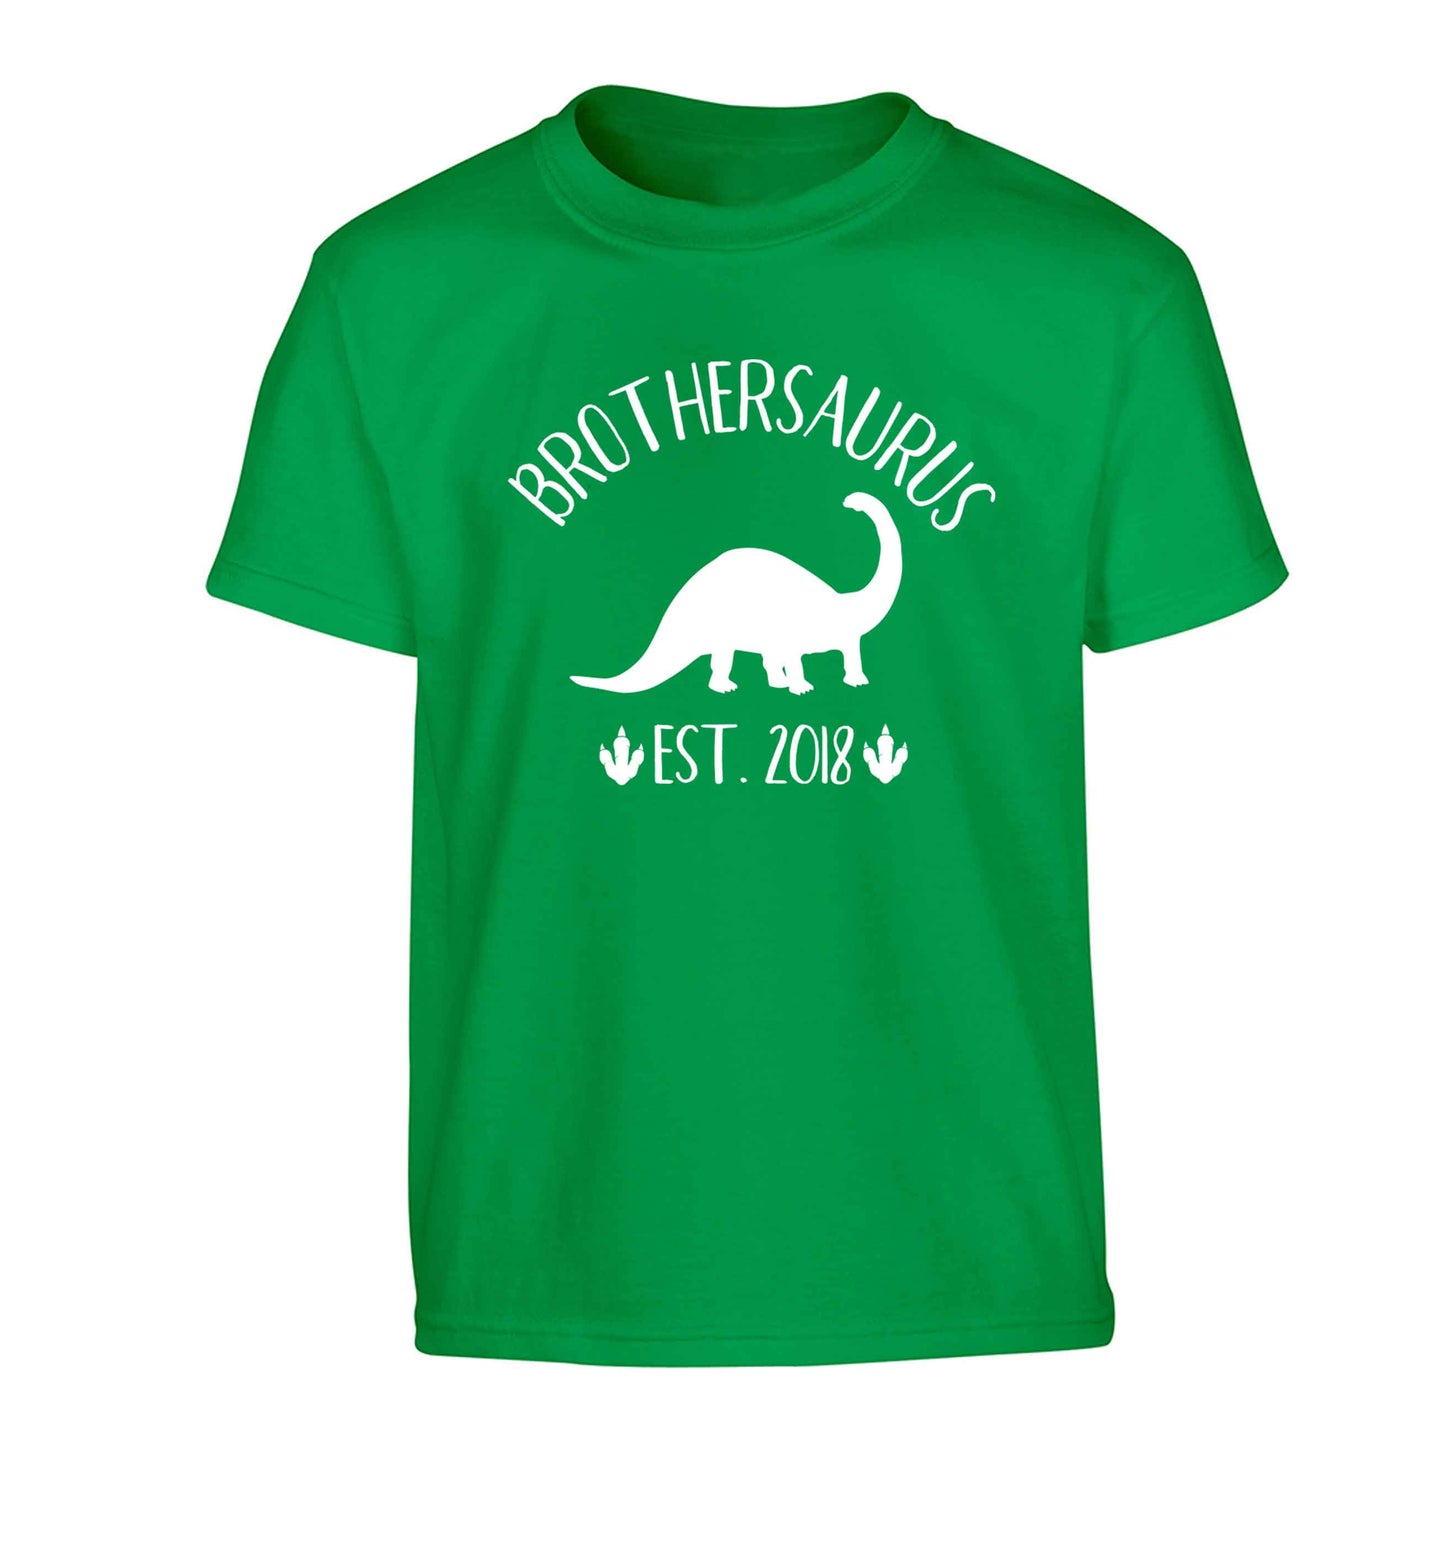 Personalised brothersaurus since (custom date) Children's green Tshirt 12-13 Years